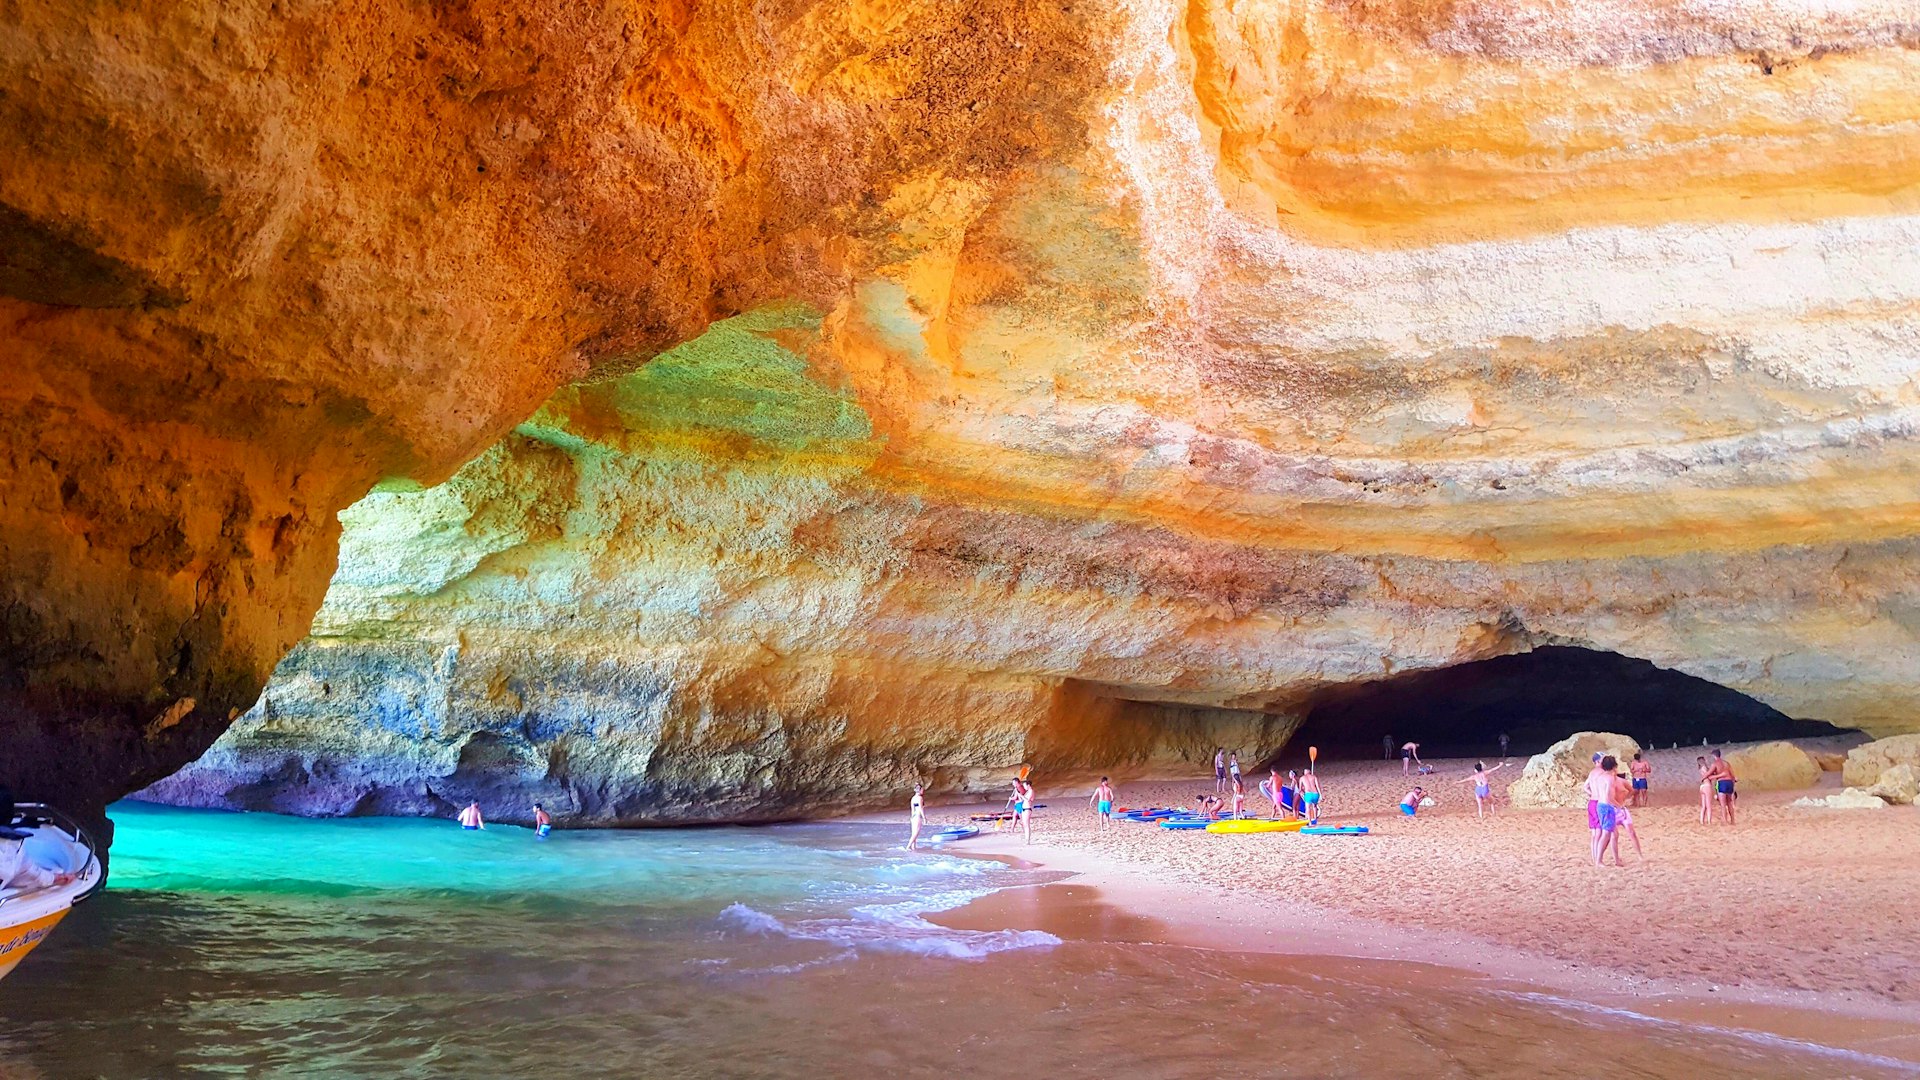 La gente juega en una playa dentro de una gran cueva de arena, mientras el agua turquesa baña la arena